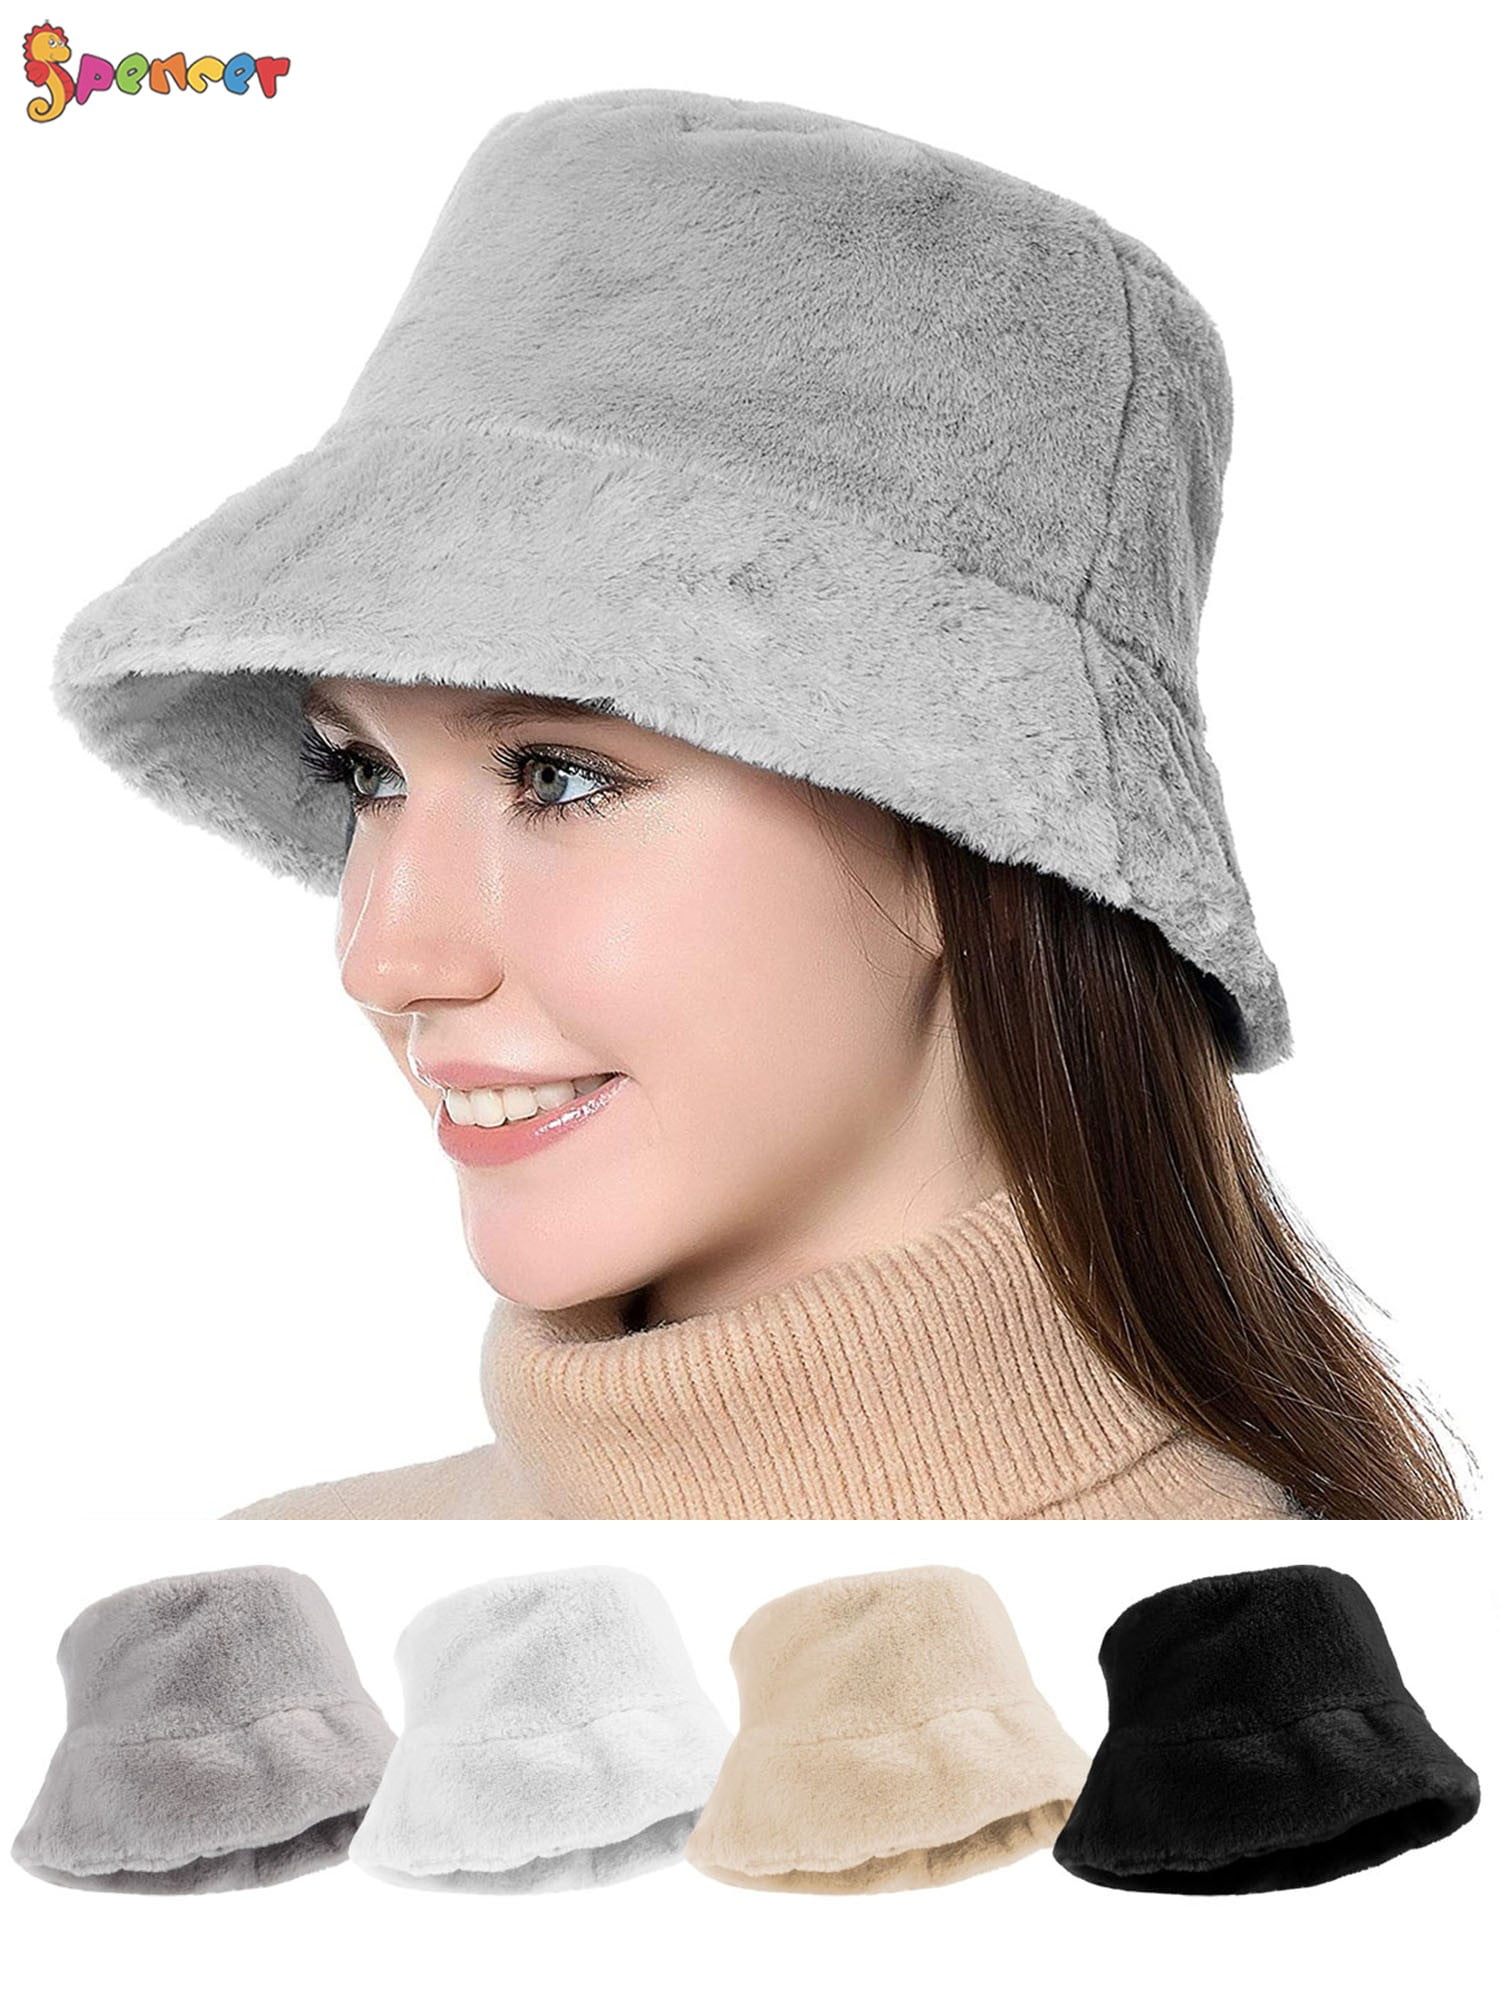 Spencer Outdoor Women\'s Winter Bucket Hat Foldable Vintage Faux Fur Wool  Warm Cloche Hats Fisherman Visor Cap \